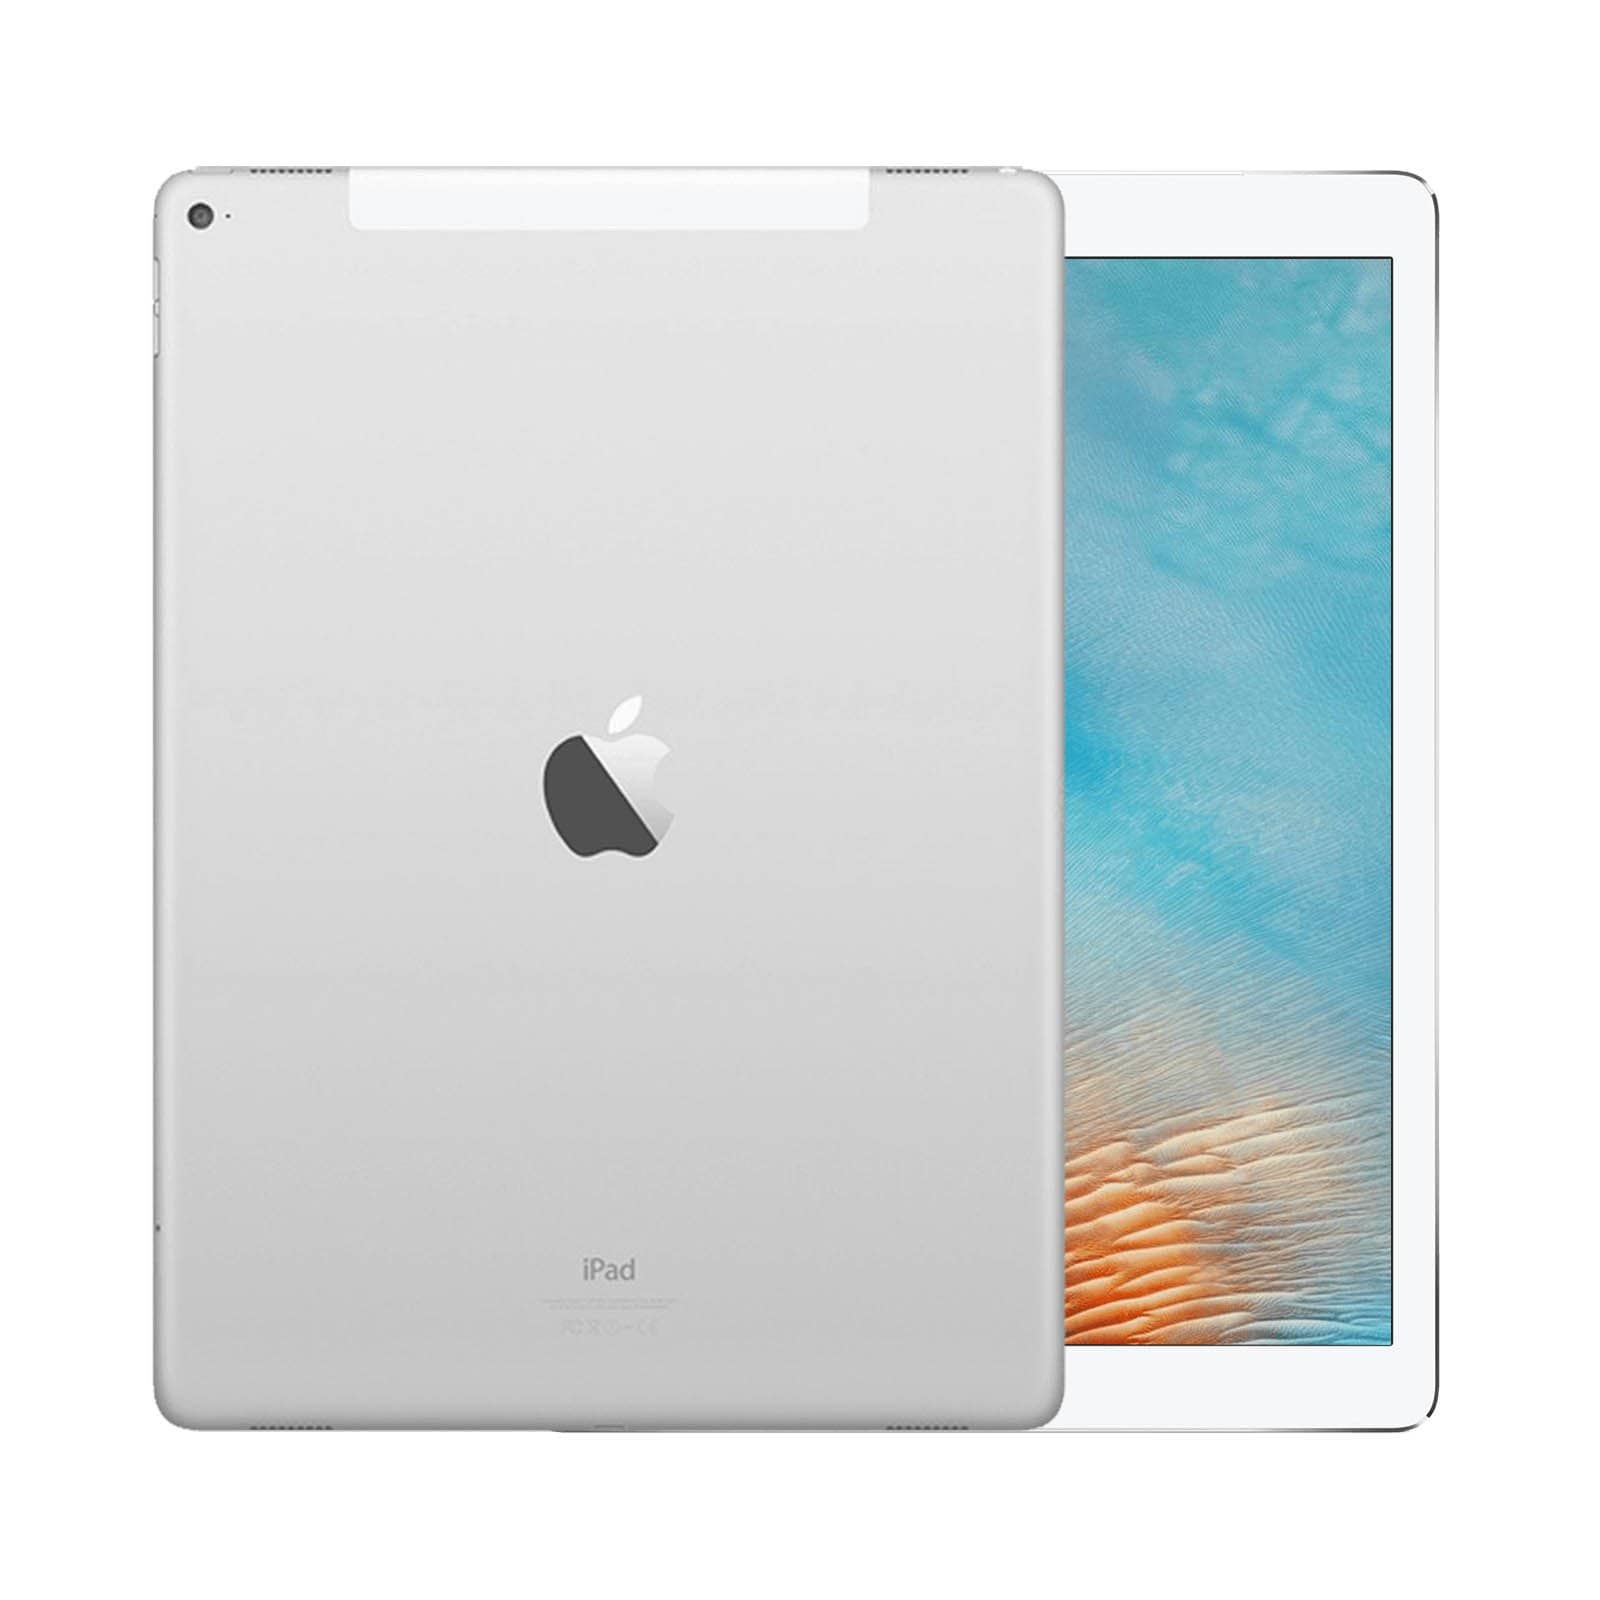 iPad Pro 12.9 Inch 2nd Gen 512GB Silver Good - WiFi 512GB Silver Good